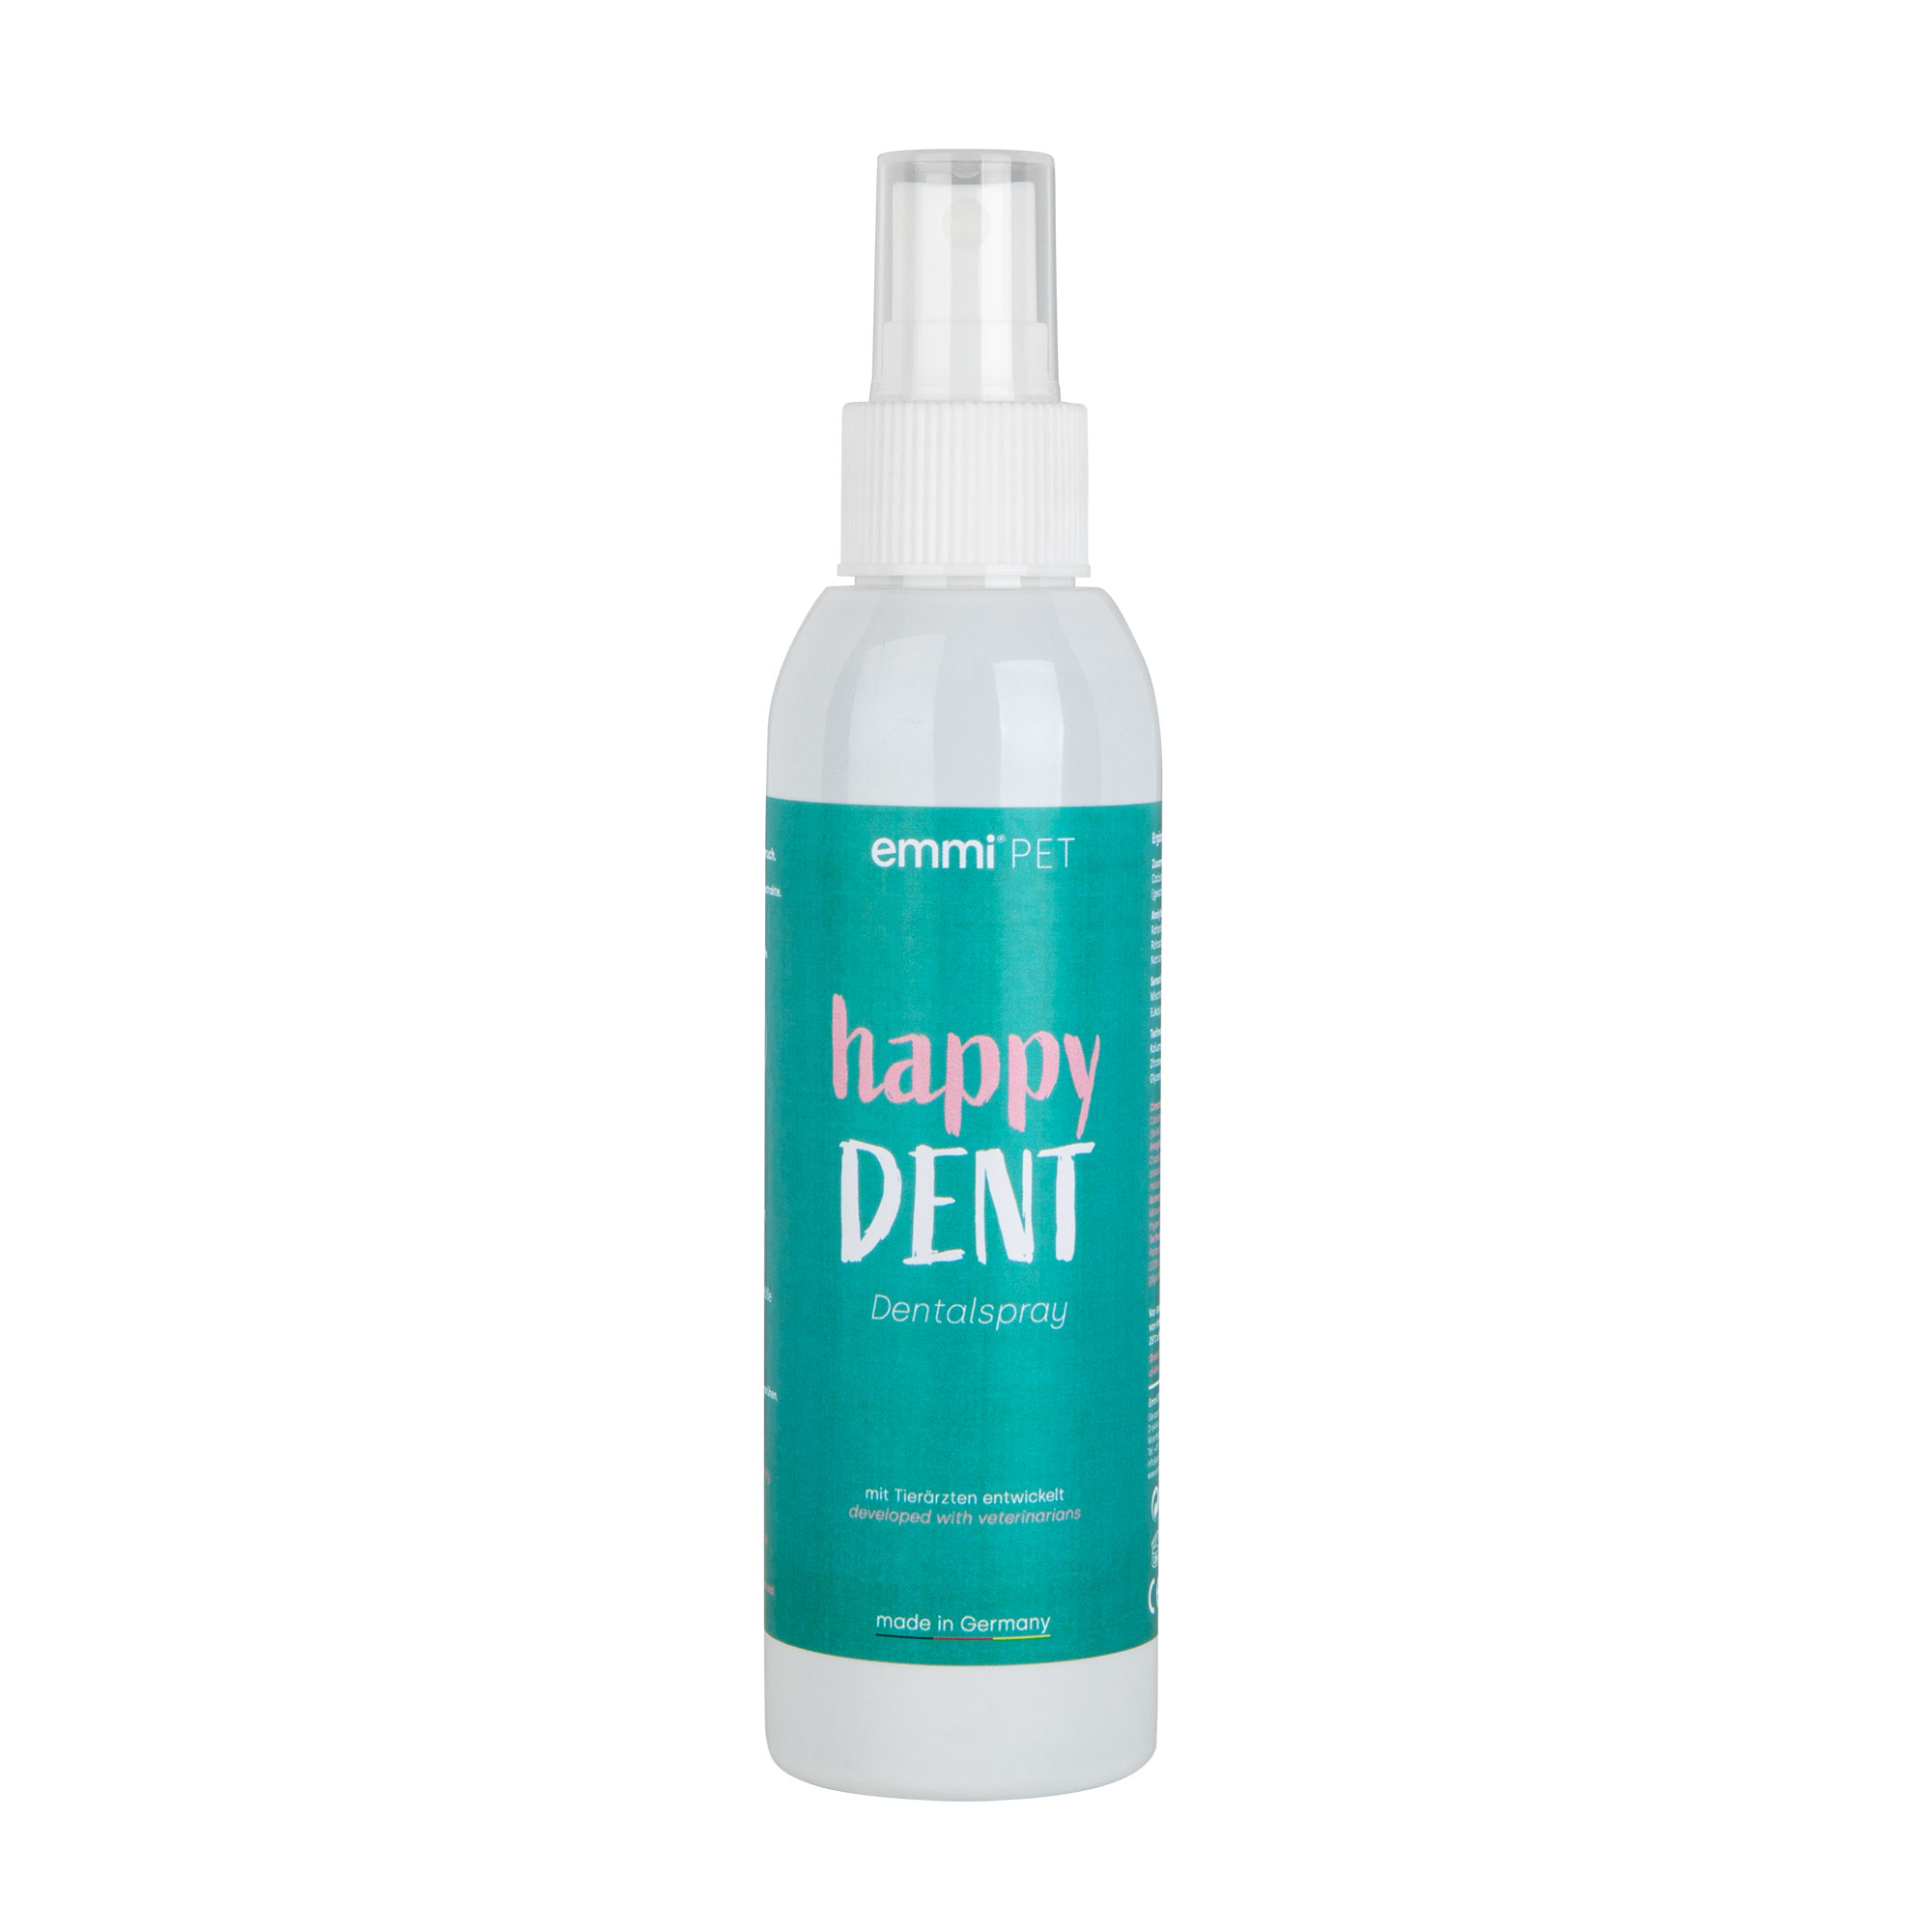 emmi-pet spray dental y bucal Happy DENT